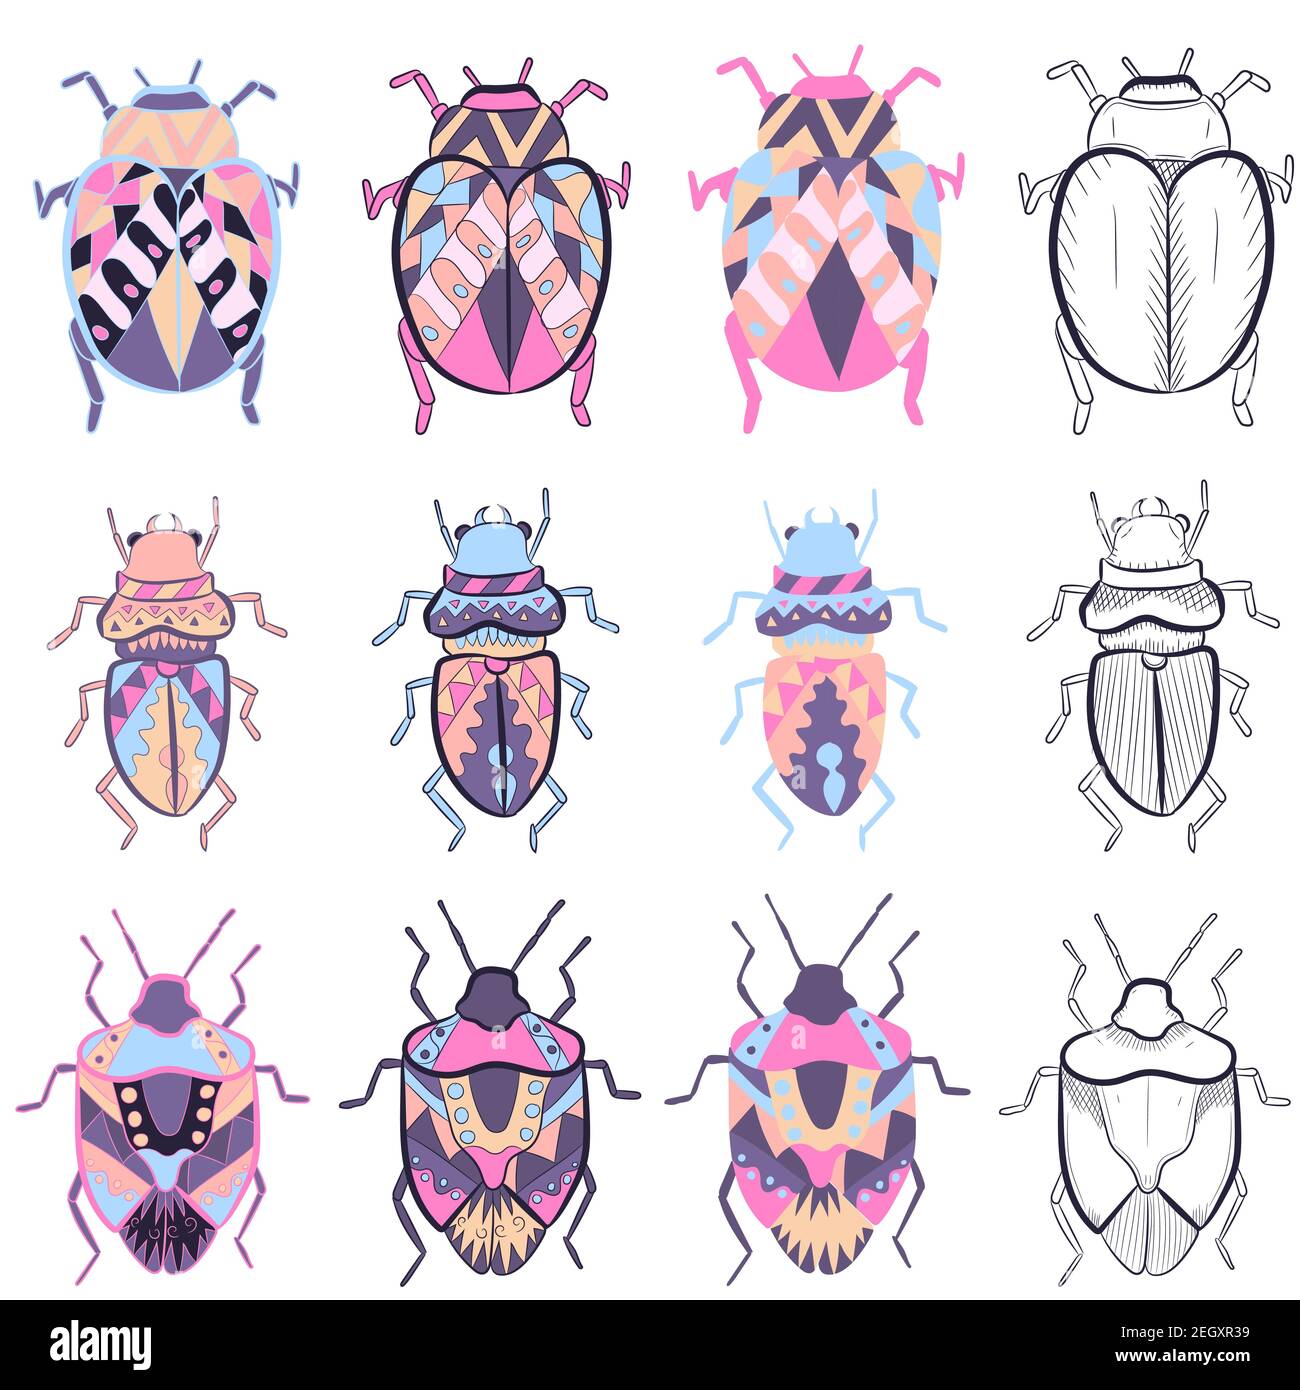 Piccoli elementi pack con diversi disegni di bug colorati. Collezione vettoriale con schizzi e illustrazioni piatte di insetti. Illustrazione Vettoriale